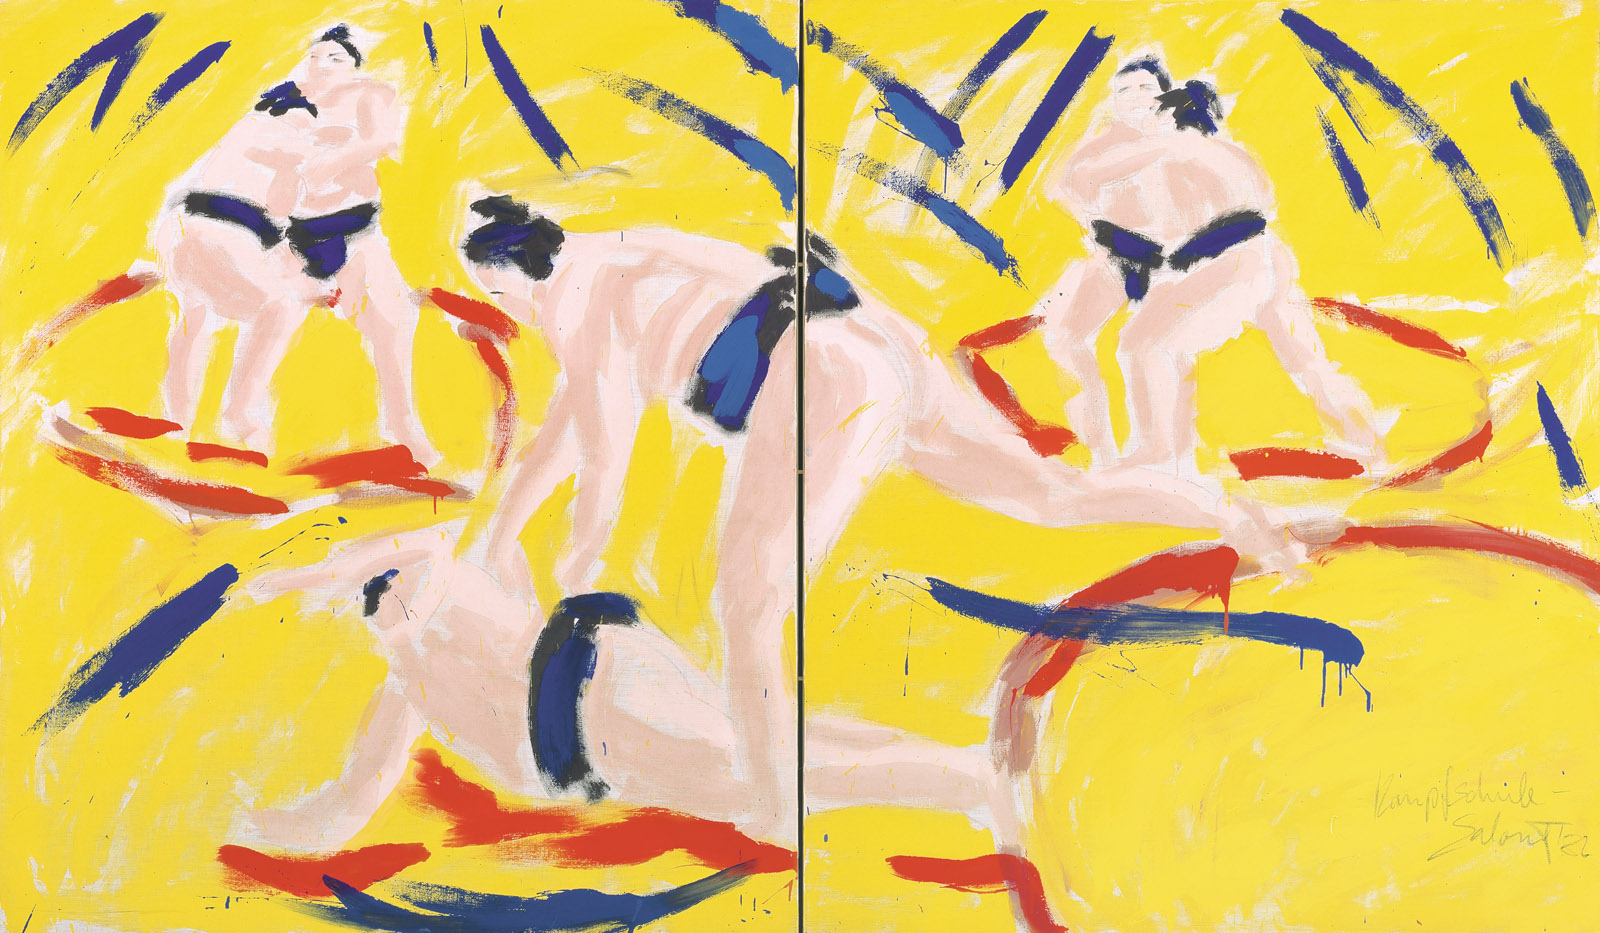 Salome: Sumo-Ringer,1982, Mischtechnik auf Leinwand, 2-teilig, Gesamtgröße 190 x 320 cm